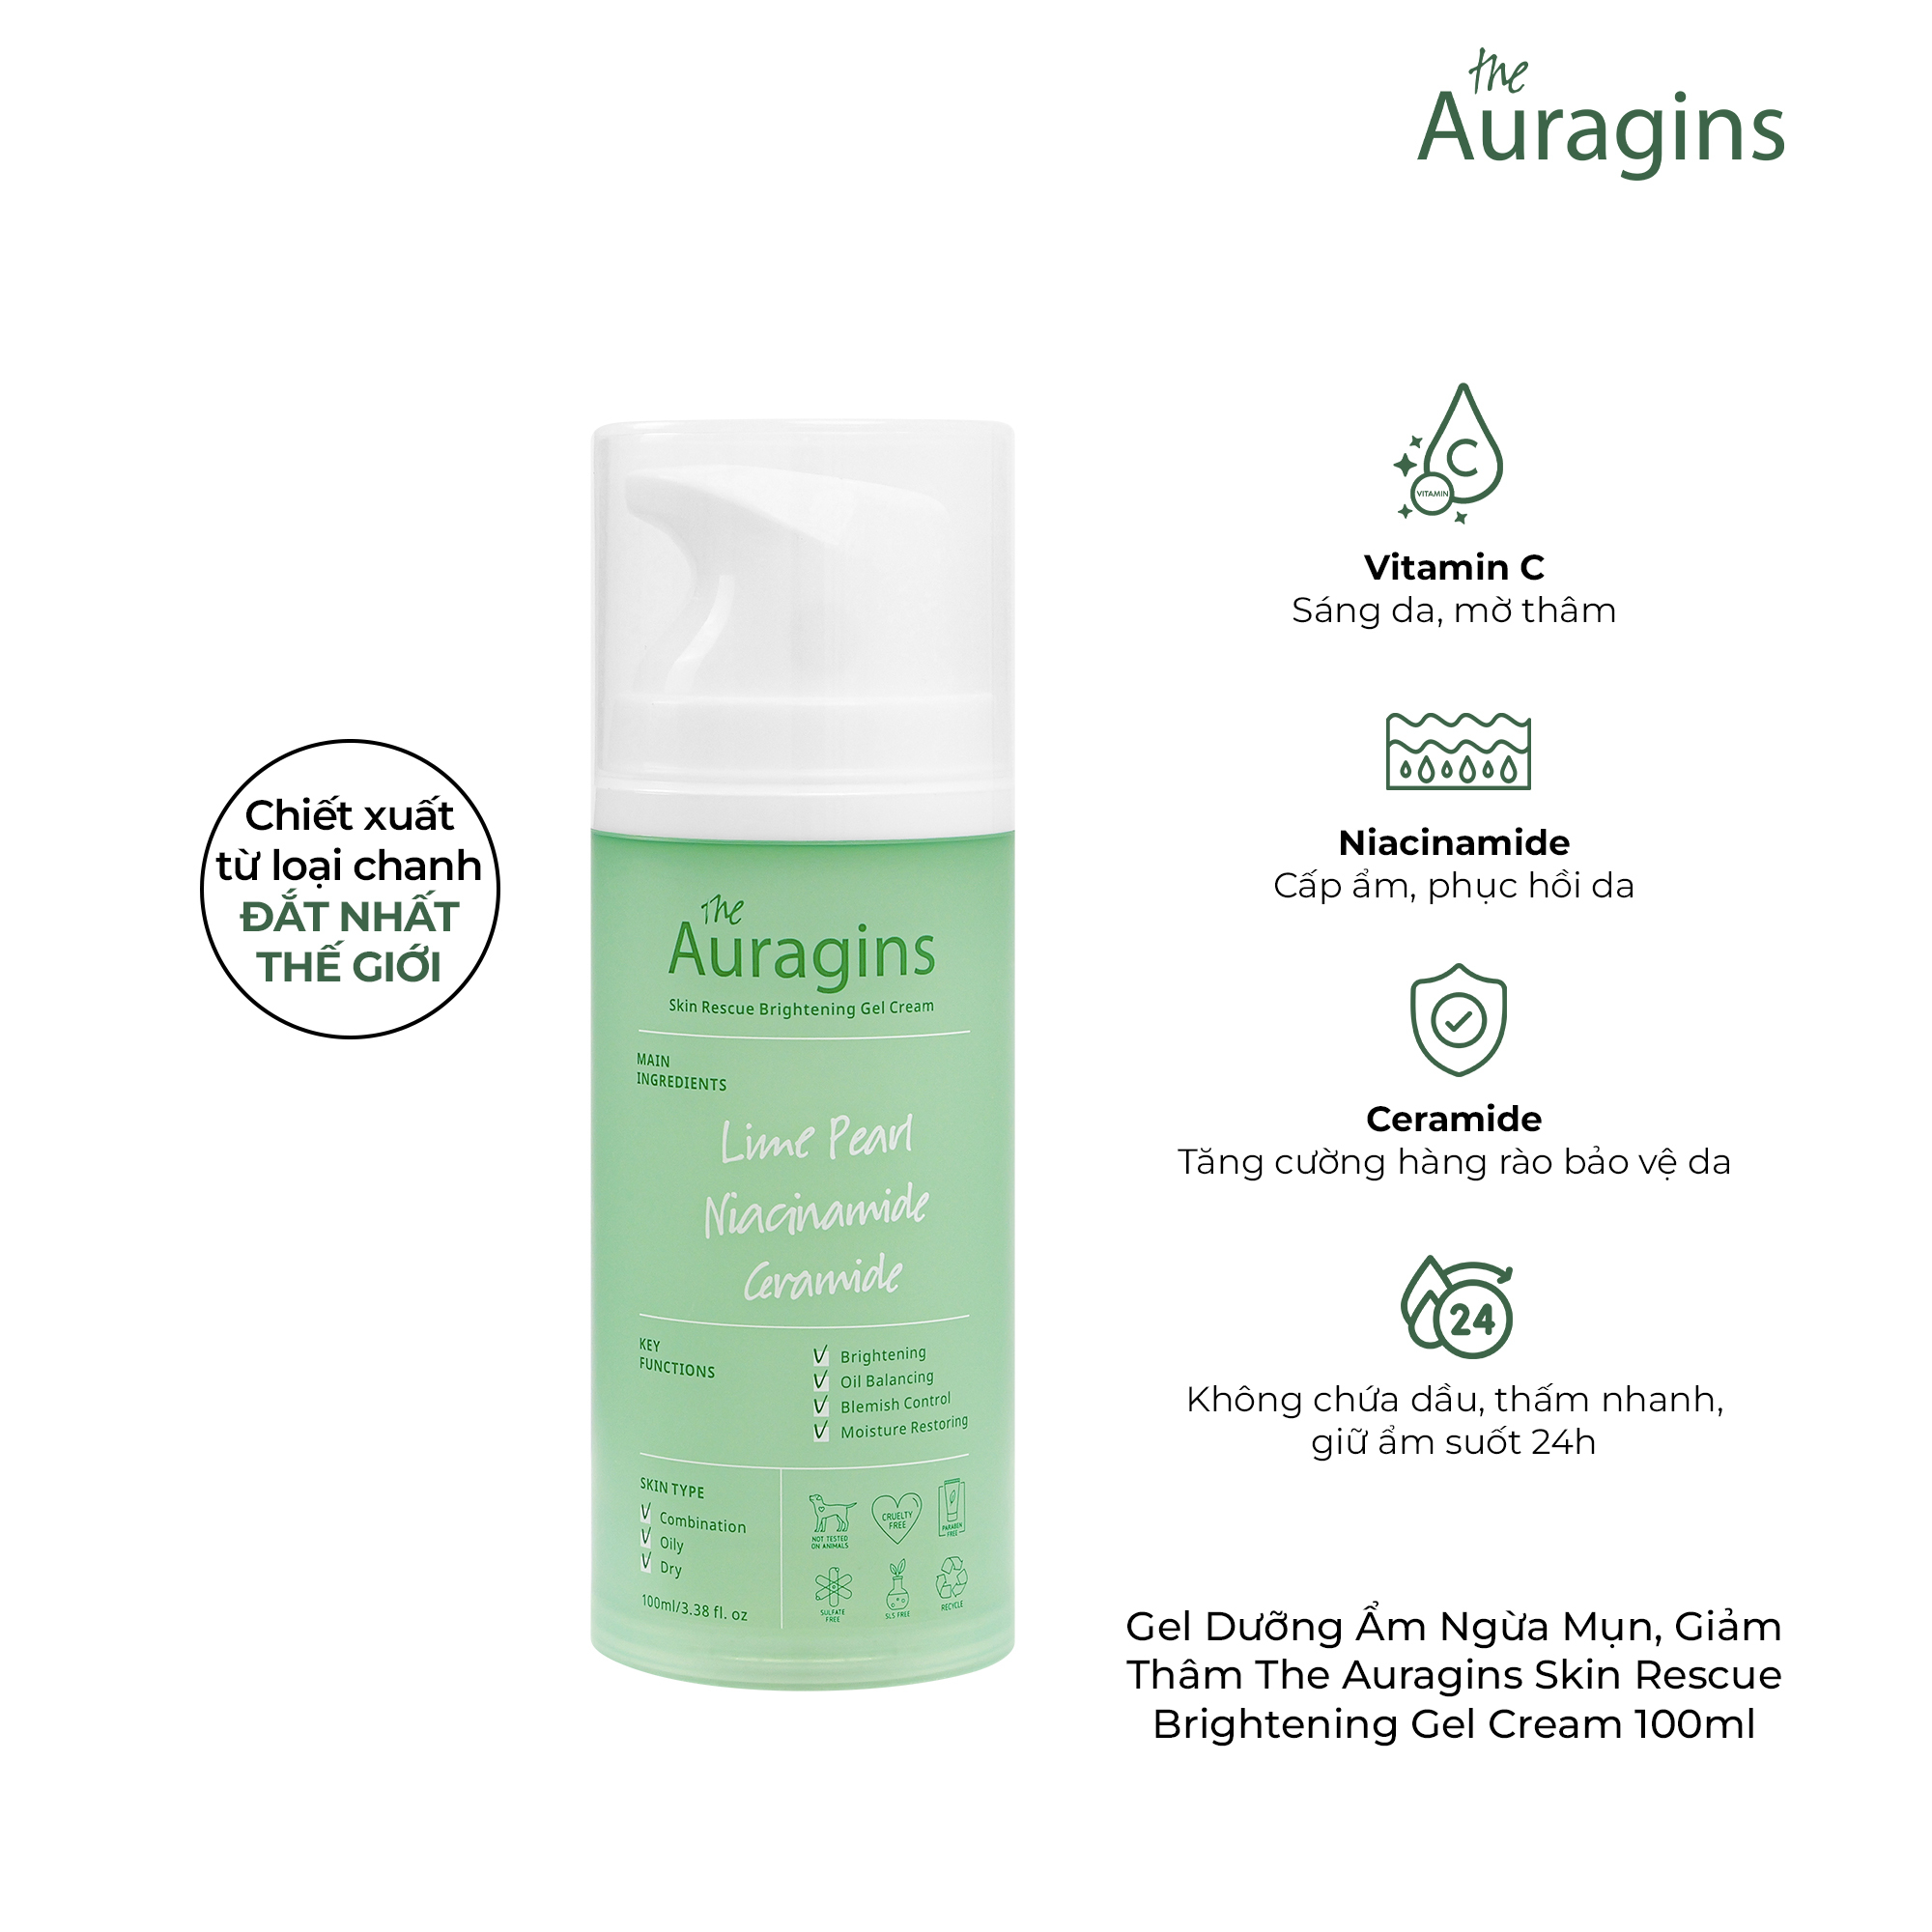 Gel dưỡng ẩm ngừa mụn, giảm thâm The Auragins Skin Rescue Brightening Gel Cream 100ml